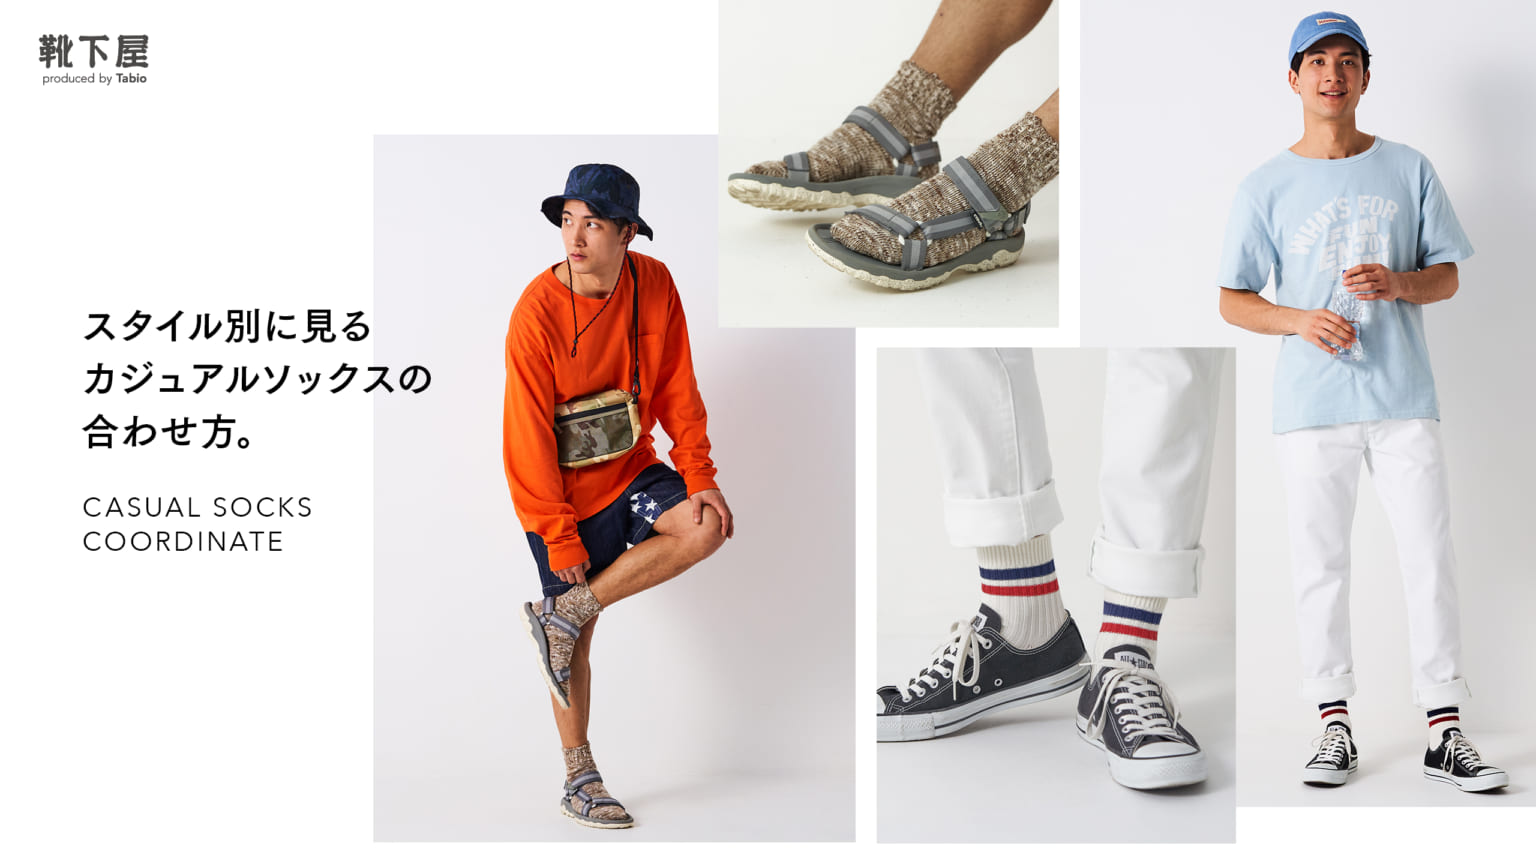 スタイル別に見るカジュアルソックスの合わせ方 靴下屋公式通販 Tabio オンラインストア